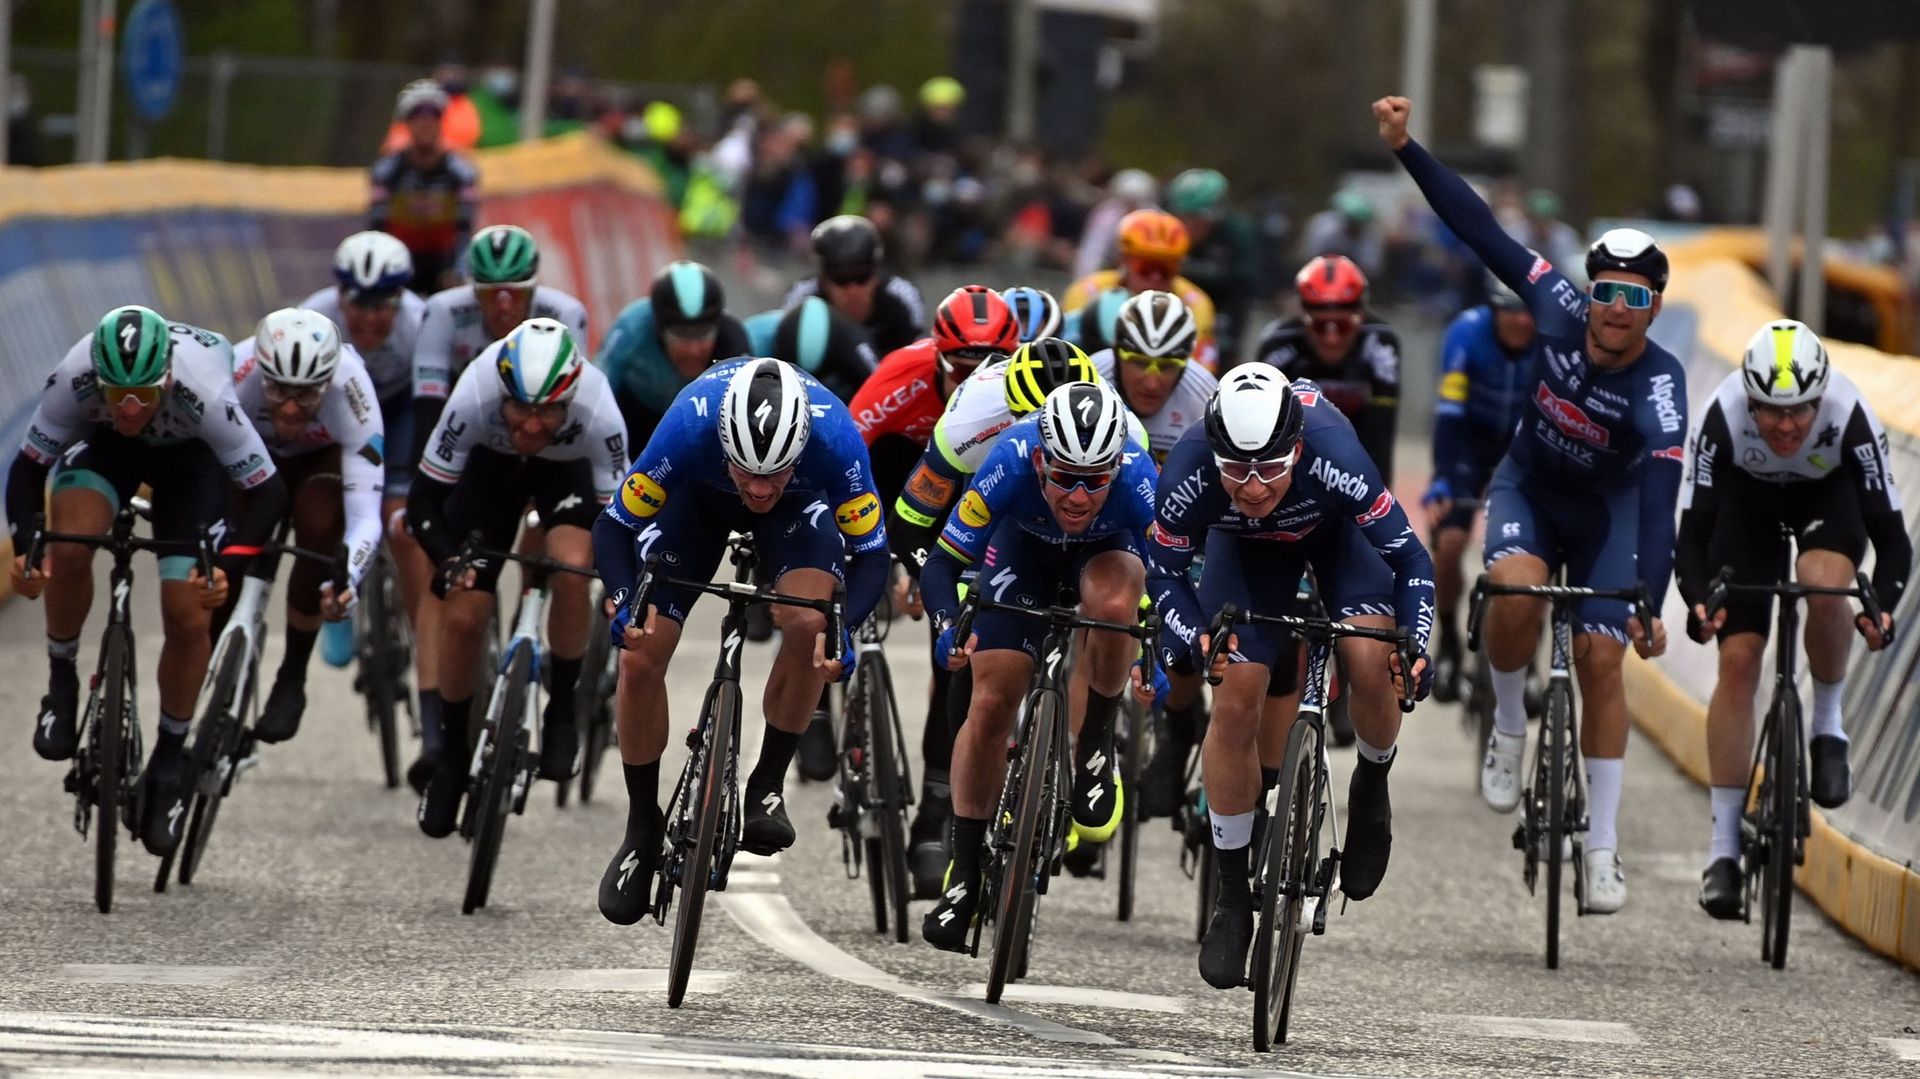 Cyclisme : Image du sprint de l'édition 2021 du Grand Prix de l'Escaut remporté par Jasper Philipsen. En 2022, Philipsen sera de retour pour défendre son titre, avec Tim Merlier à ses côtés. Arnaud De Lie sera, lui, le leader de Lotto Soudal. 